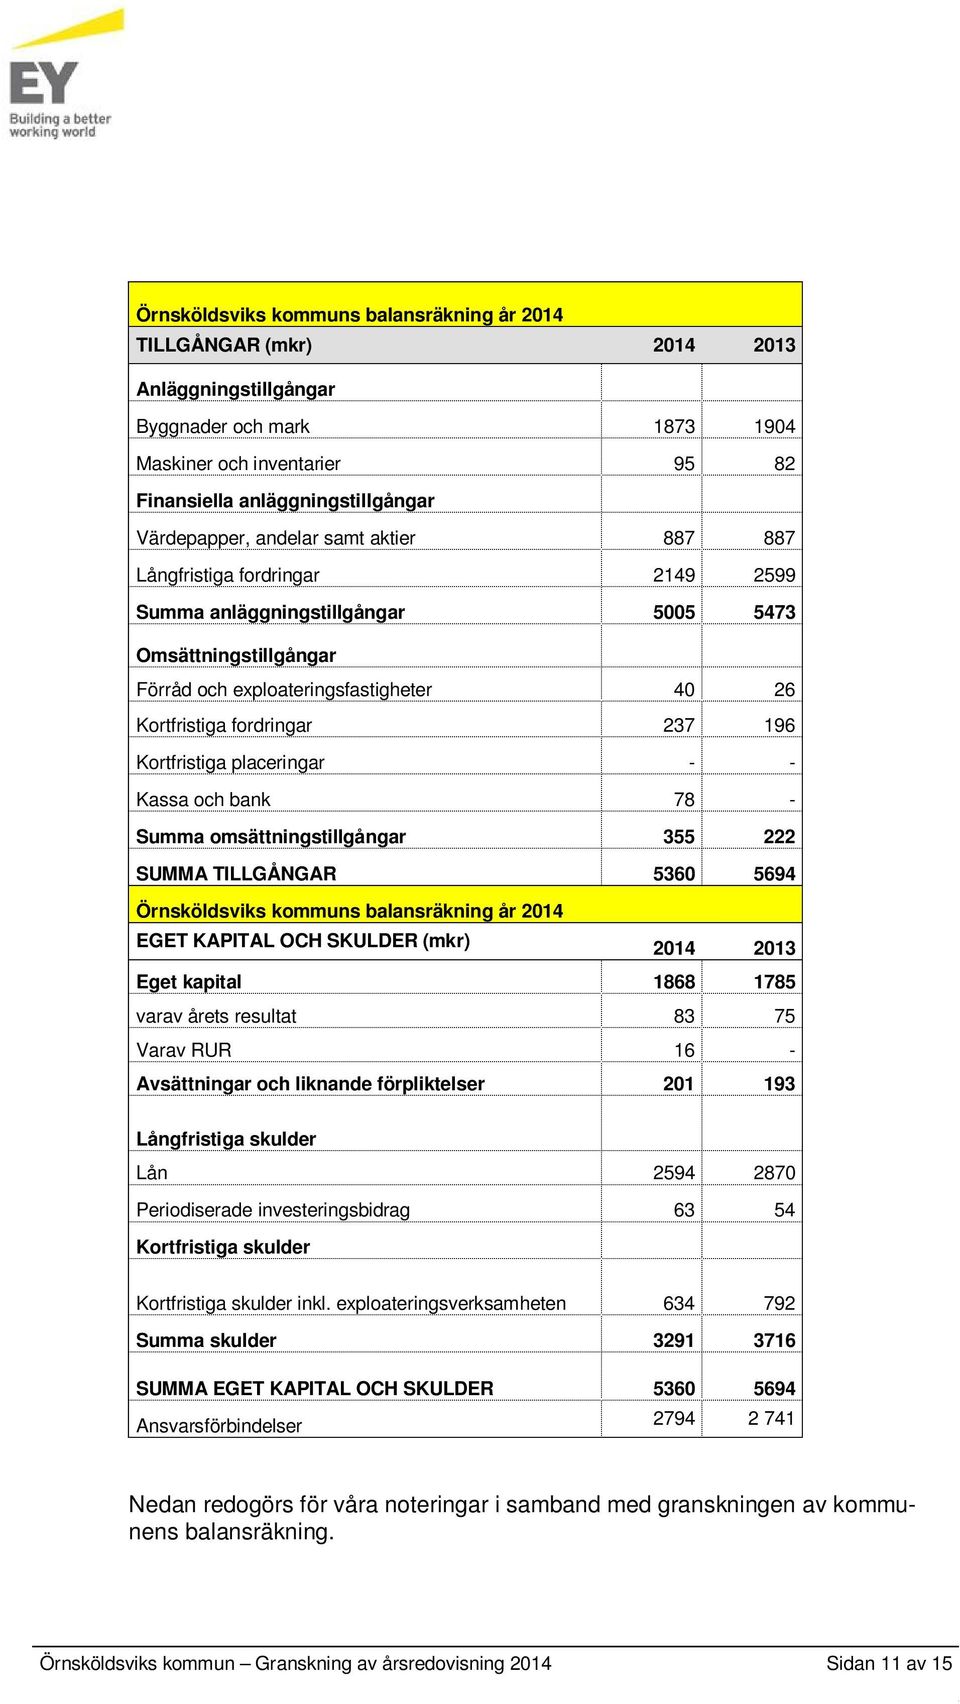 Kortfristiga placeringar - - Kassa och bank 78 - Summa omsättningstillgångar 355 222 SUMMA TILLGÅNGAR 5360 5694 Örnsköldsviks kommuns balansräkning år 2014 EGET KAPITAL OCH SKULDER (mkr) 2014 2013